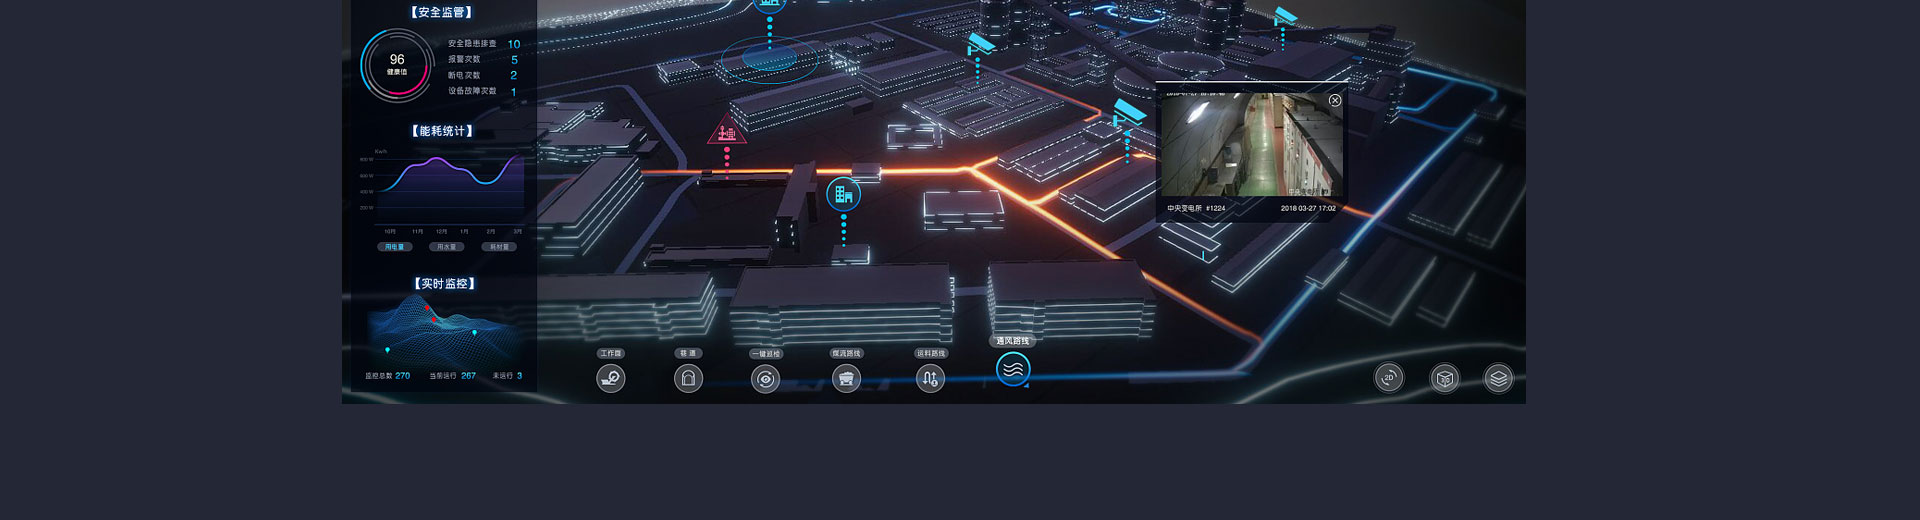 三维城科技-数字孪生3D可视化